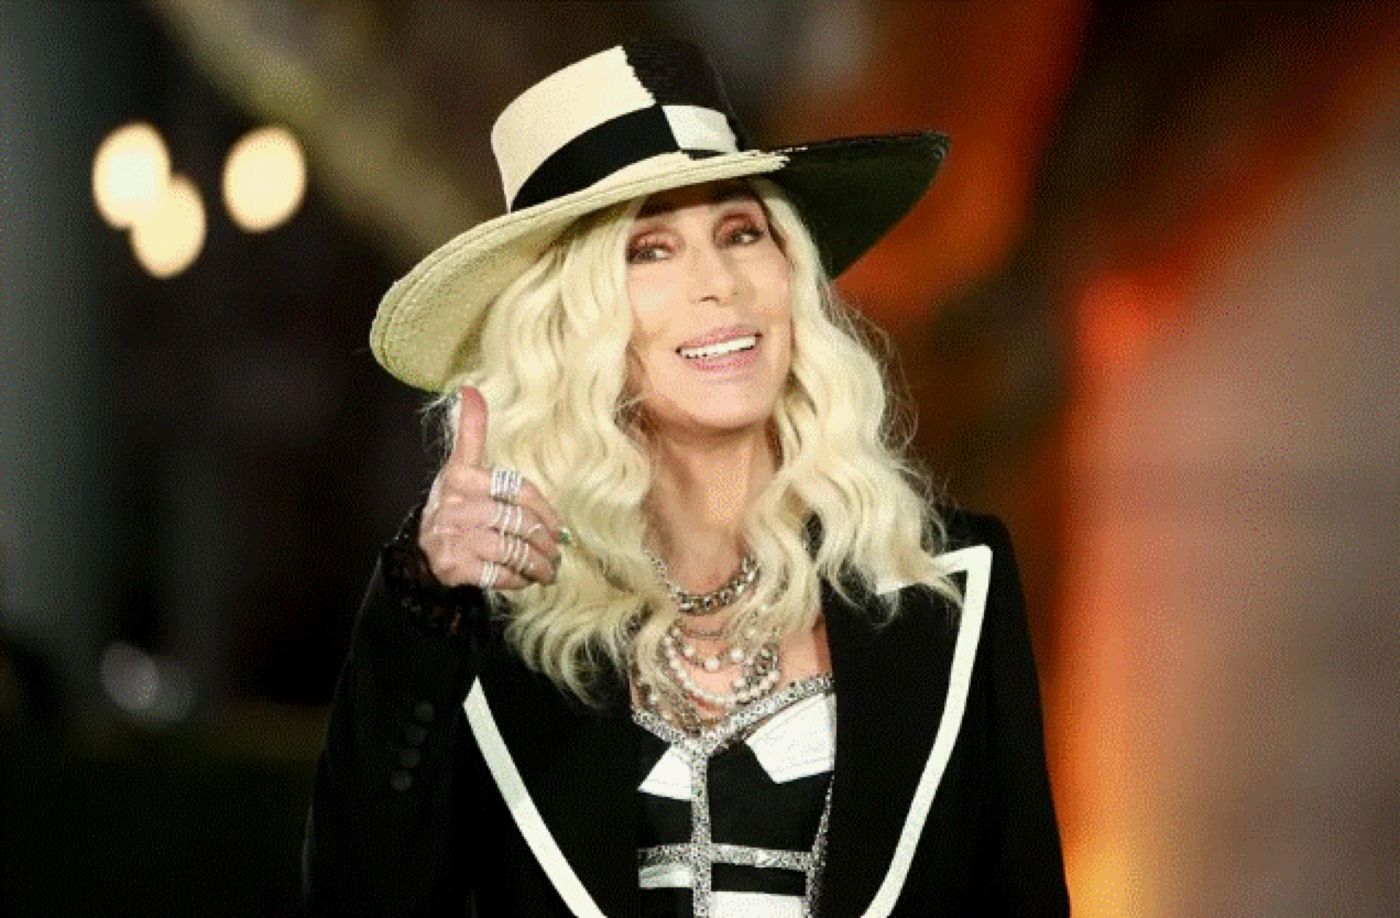 Celebra cântăreață Cher a lansat un produs nou. Să vedeți cum l-a „botezat”!